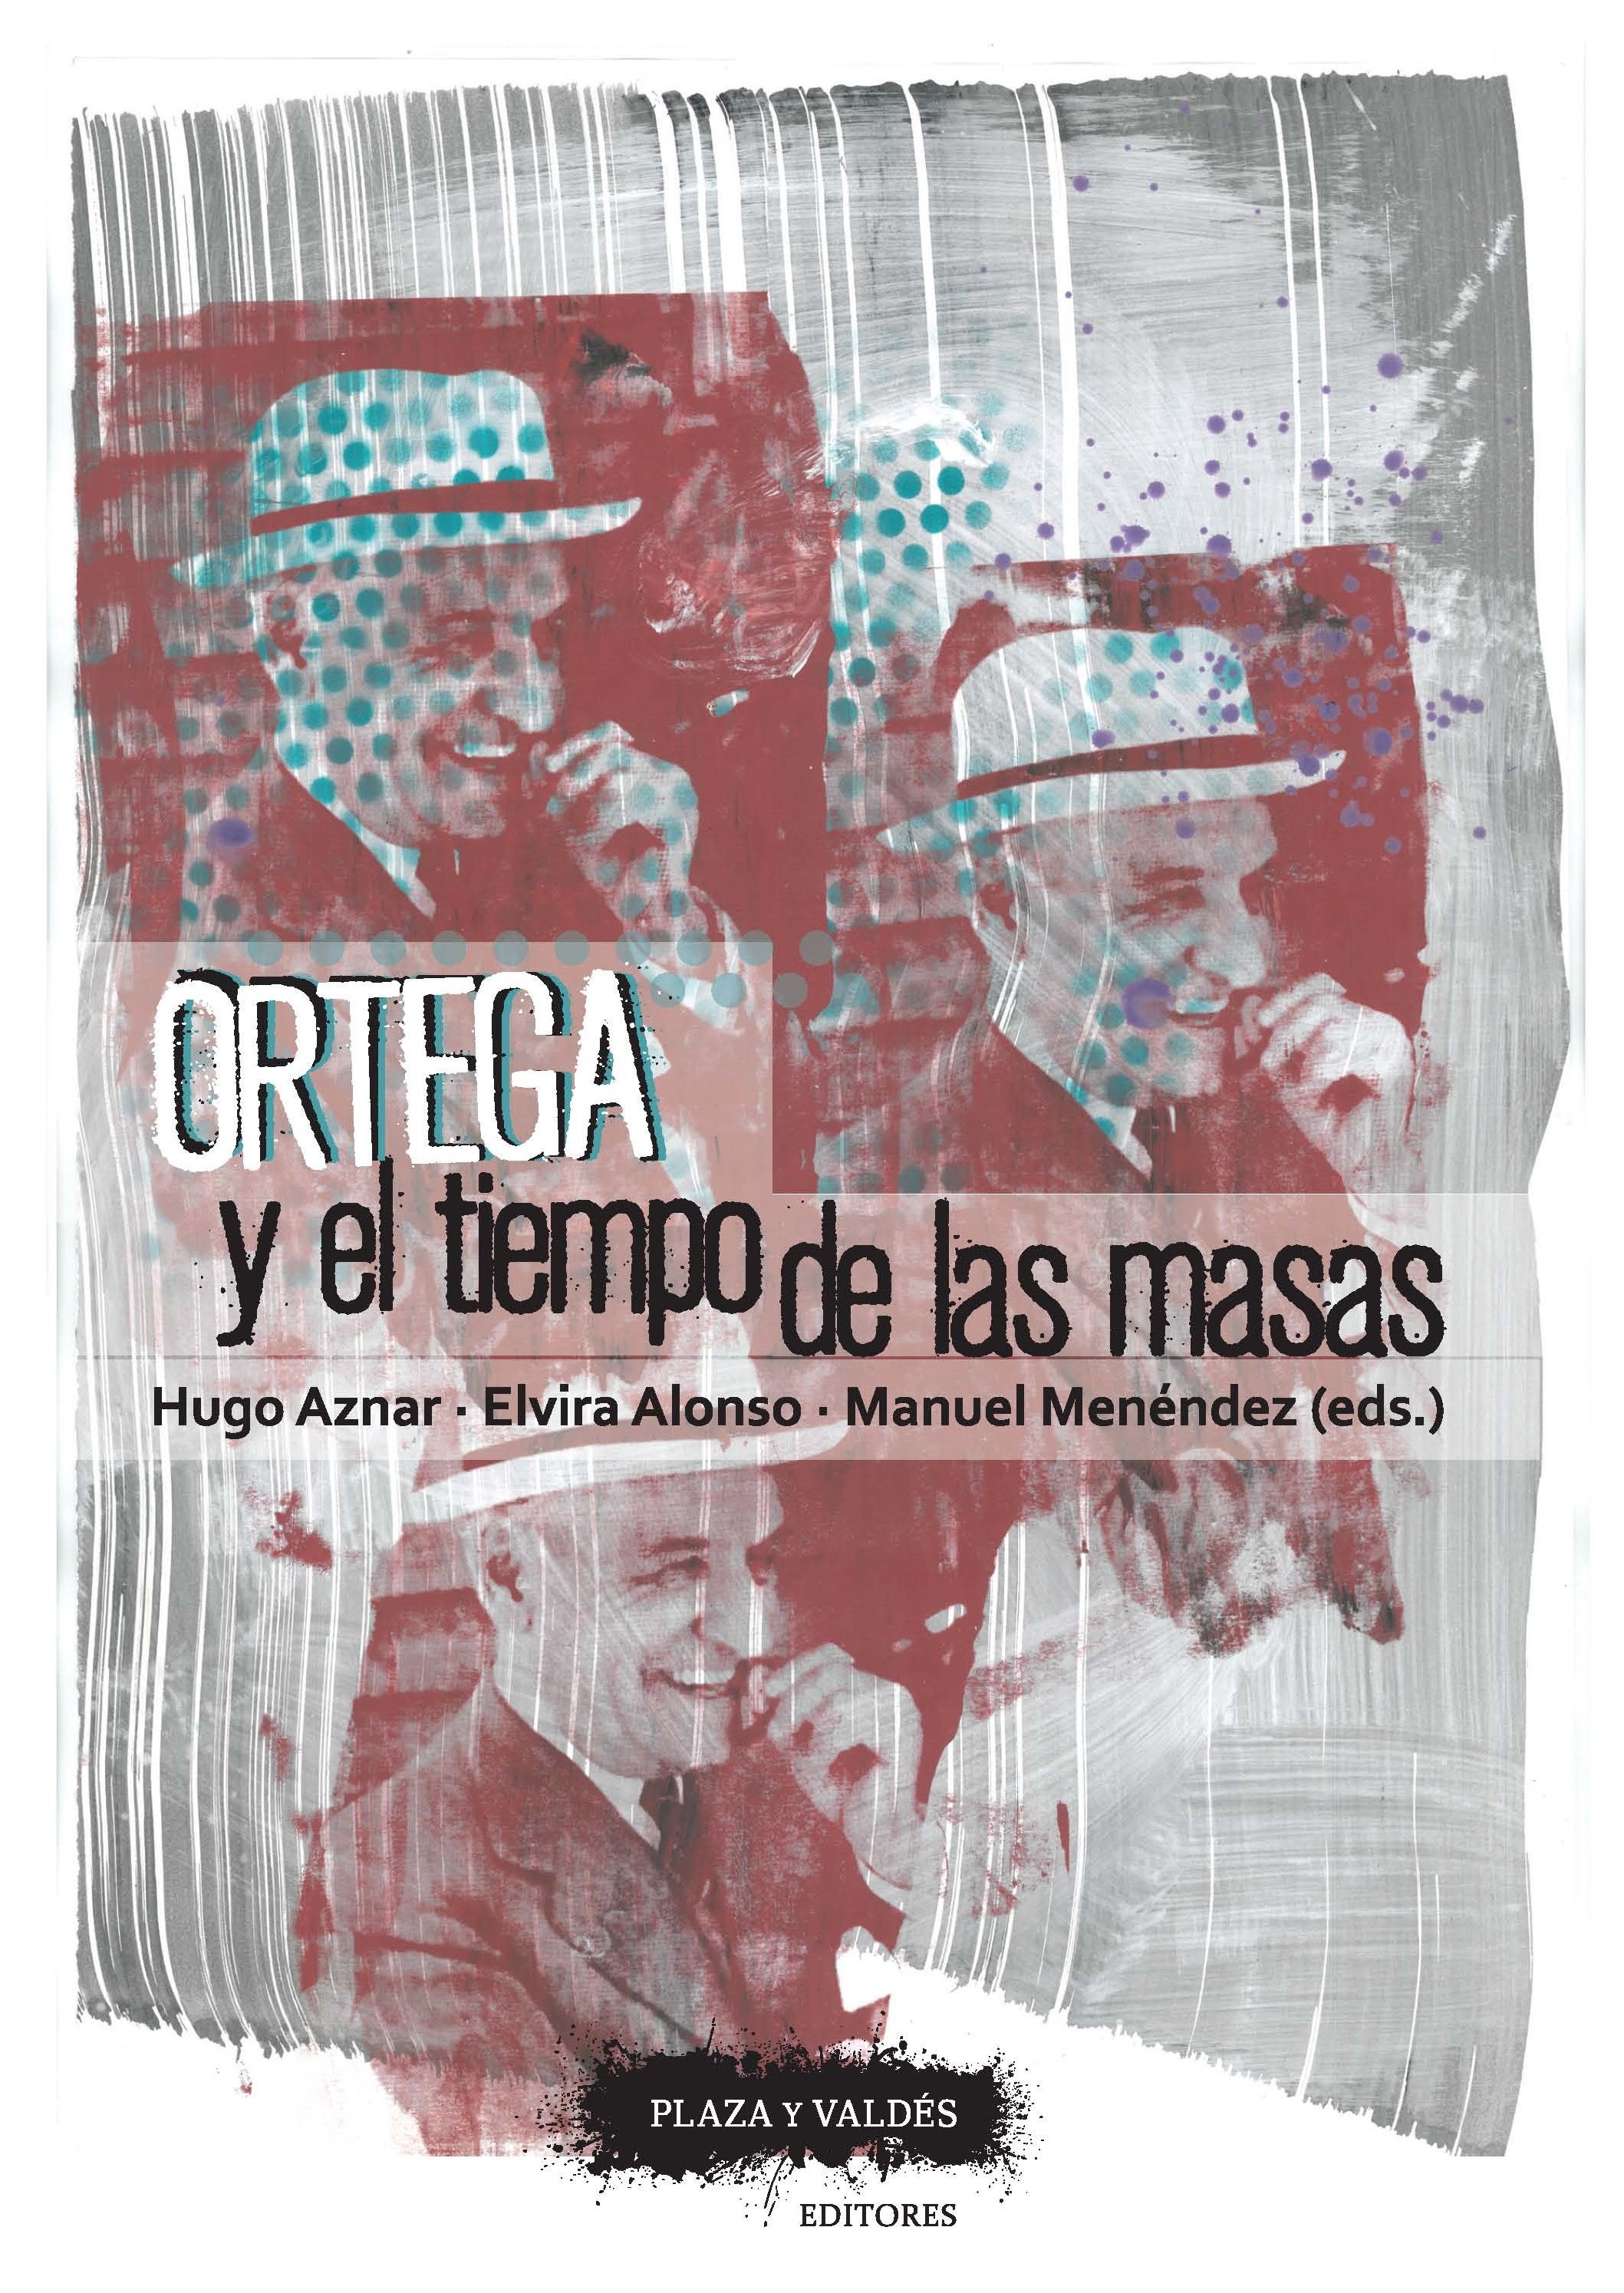 Reflexiones sobre Ortega en la FOM con motivo de la presentación de dos libros del grupo